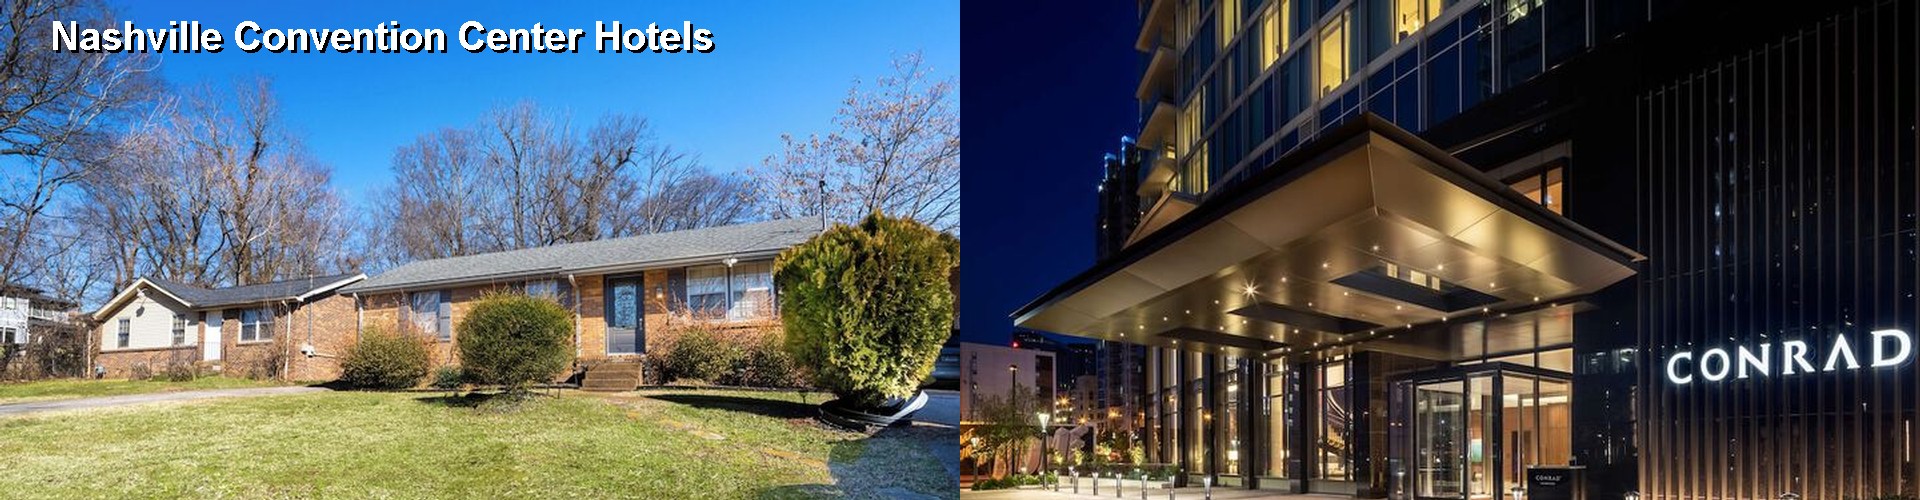 5 Best Hotels near Nashville Convention Center